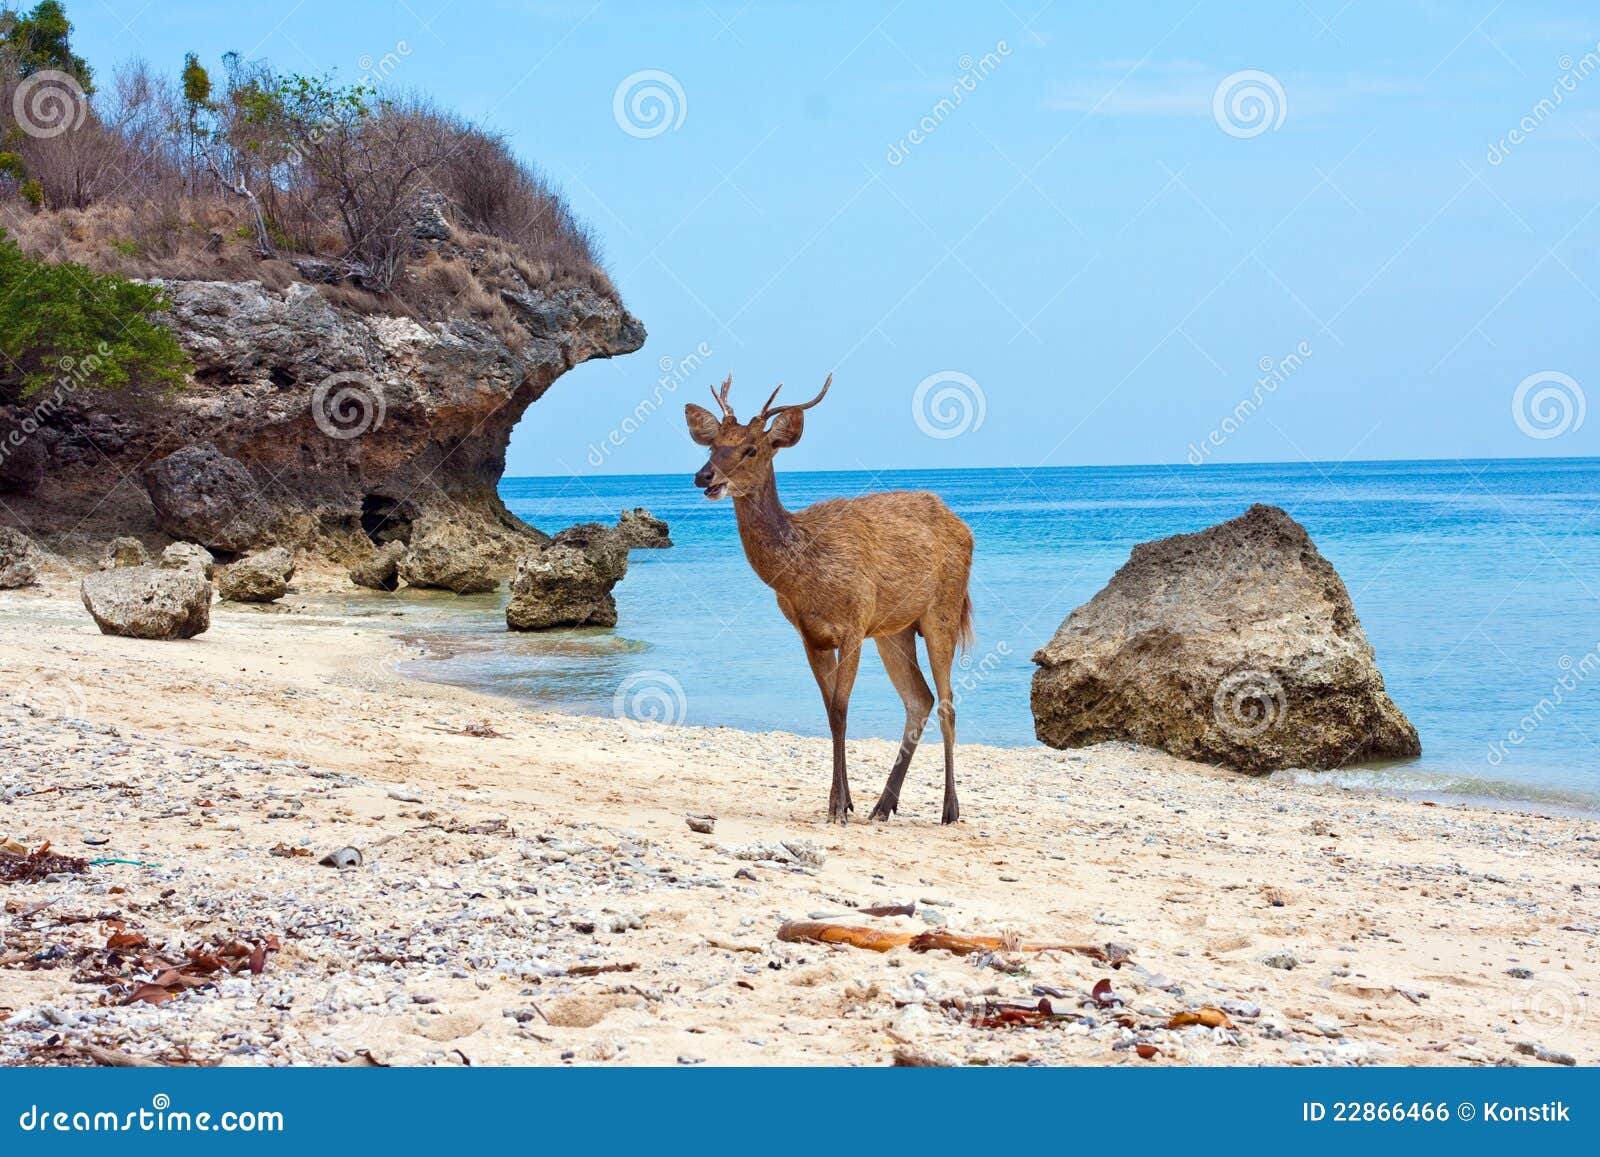 Олень в море. Олень на пляже. Пляж с оленями Бали. Лань на море. Северный олень на пляже.